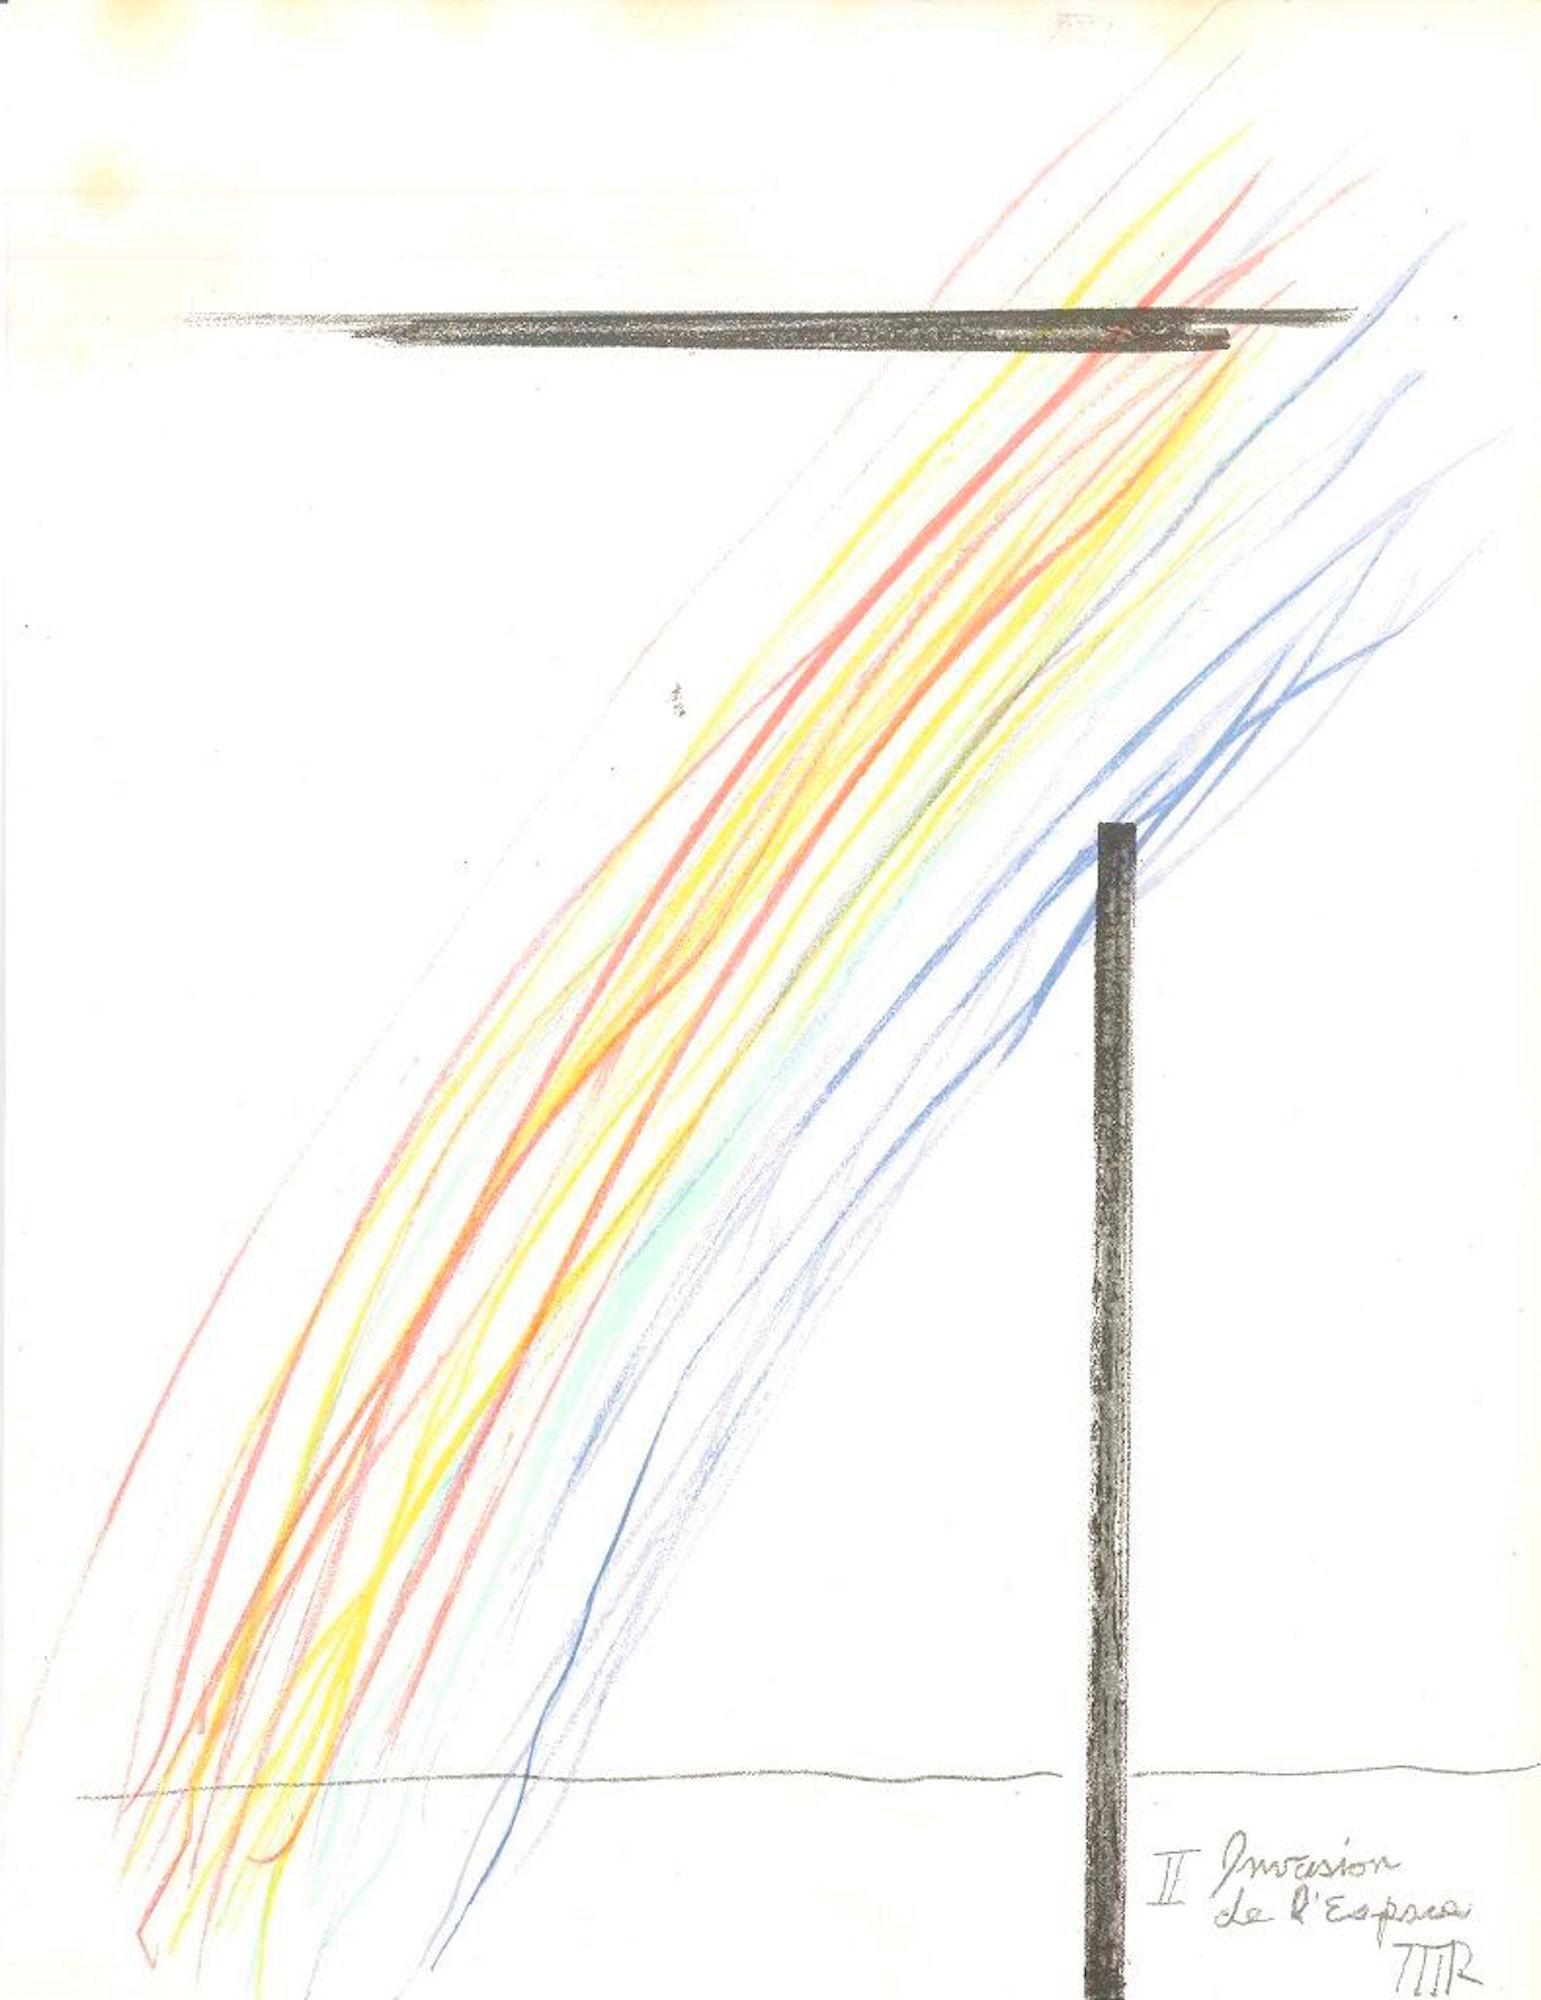 Invasion de l'espace ist ein Originaldruck des amerikanischen Künstlers und Vertreters des Dadaismus Man Ray (Philadelphia 1890 - Paris 1976).

Diese Farblithografie auf Papier wurde von der französischen Zeitschrift "XXe Siécle" herausgegeben und